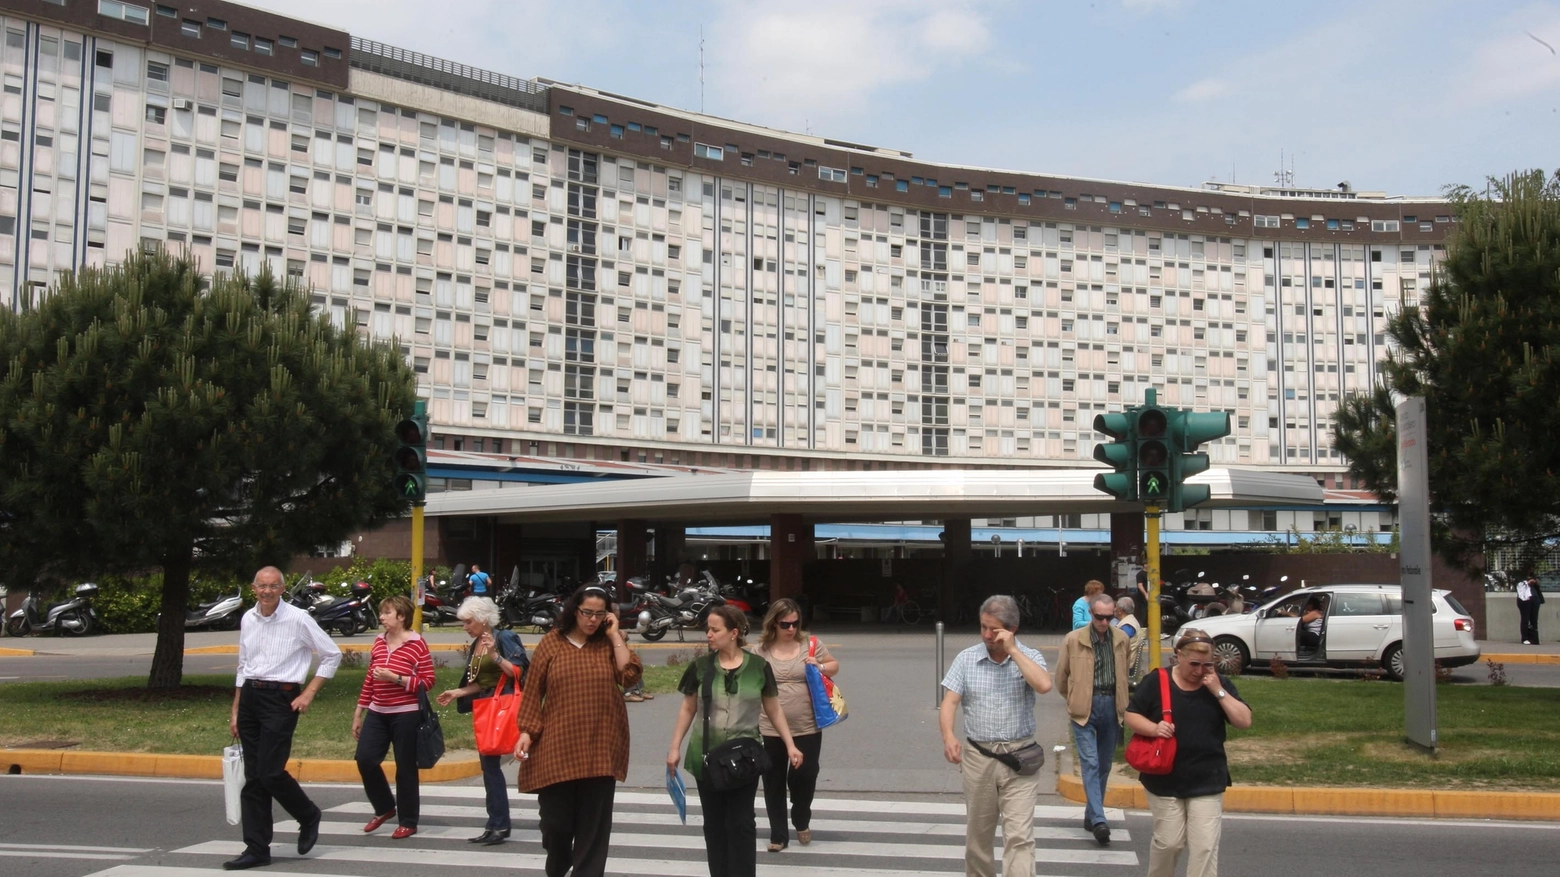 L'ospedale di Monza